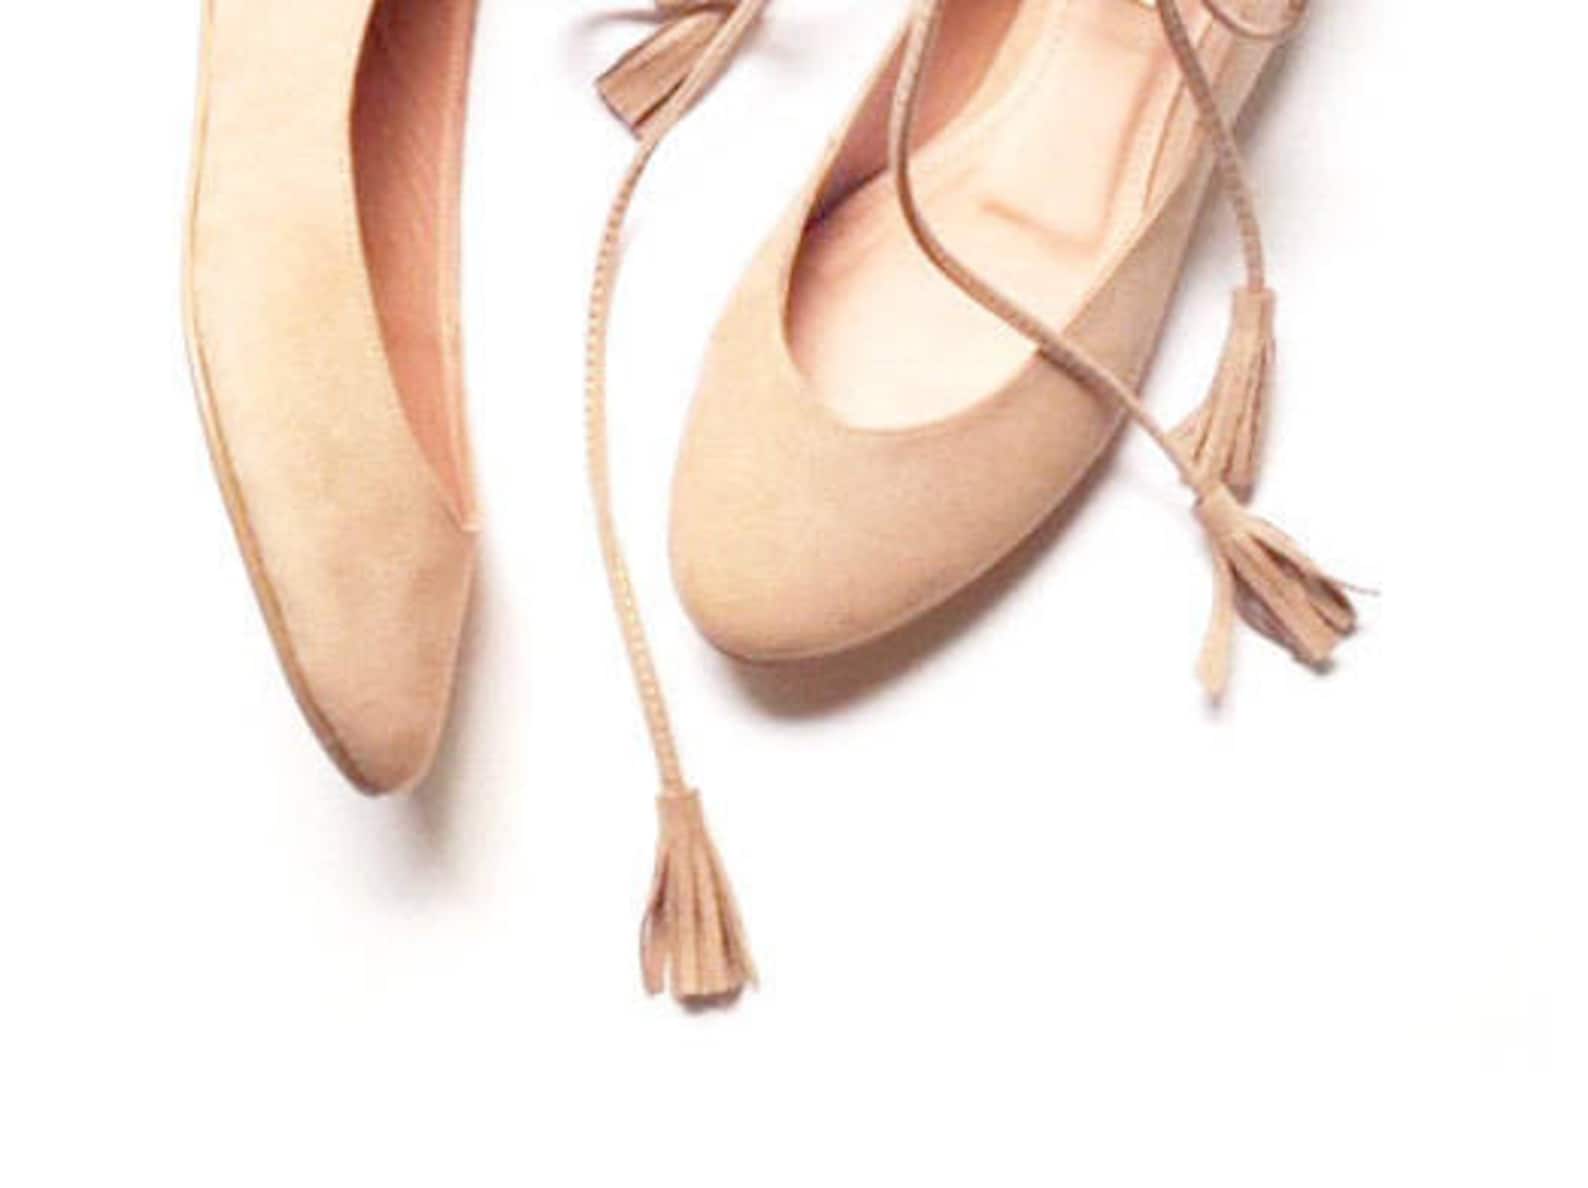 nude ballet flats - last pair! - size 9 us - rose quartz - faux suede textile / vegan lining - mina shoes mexico